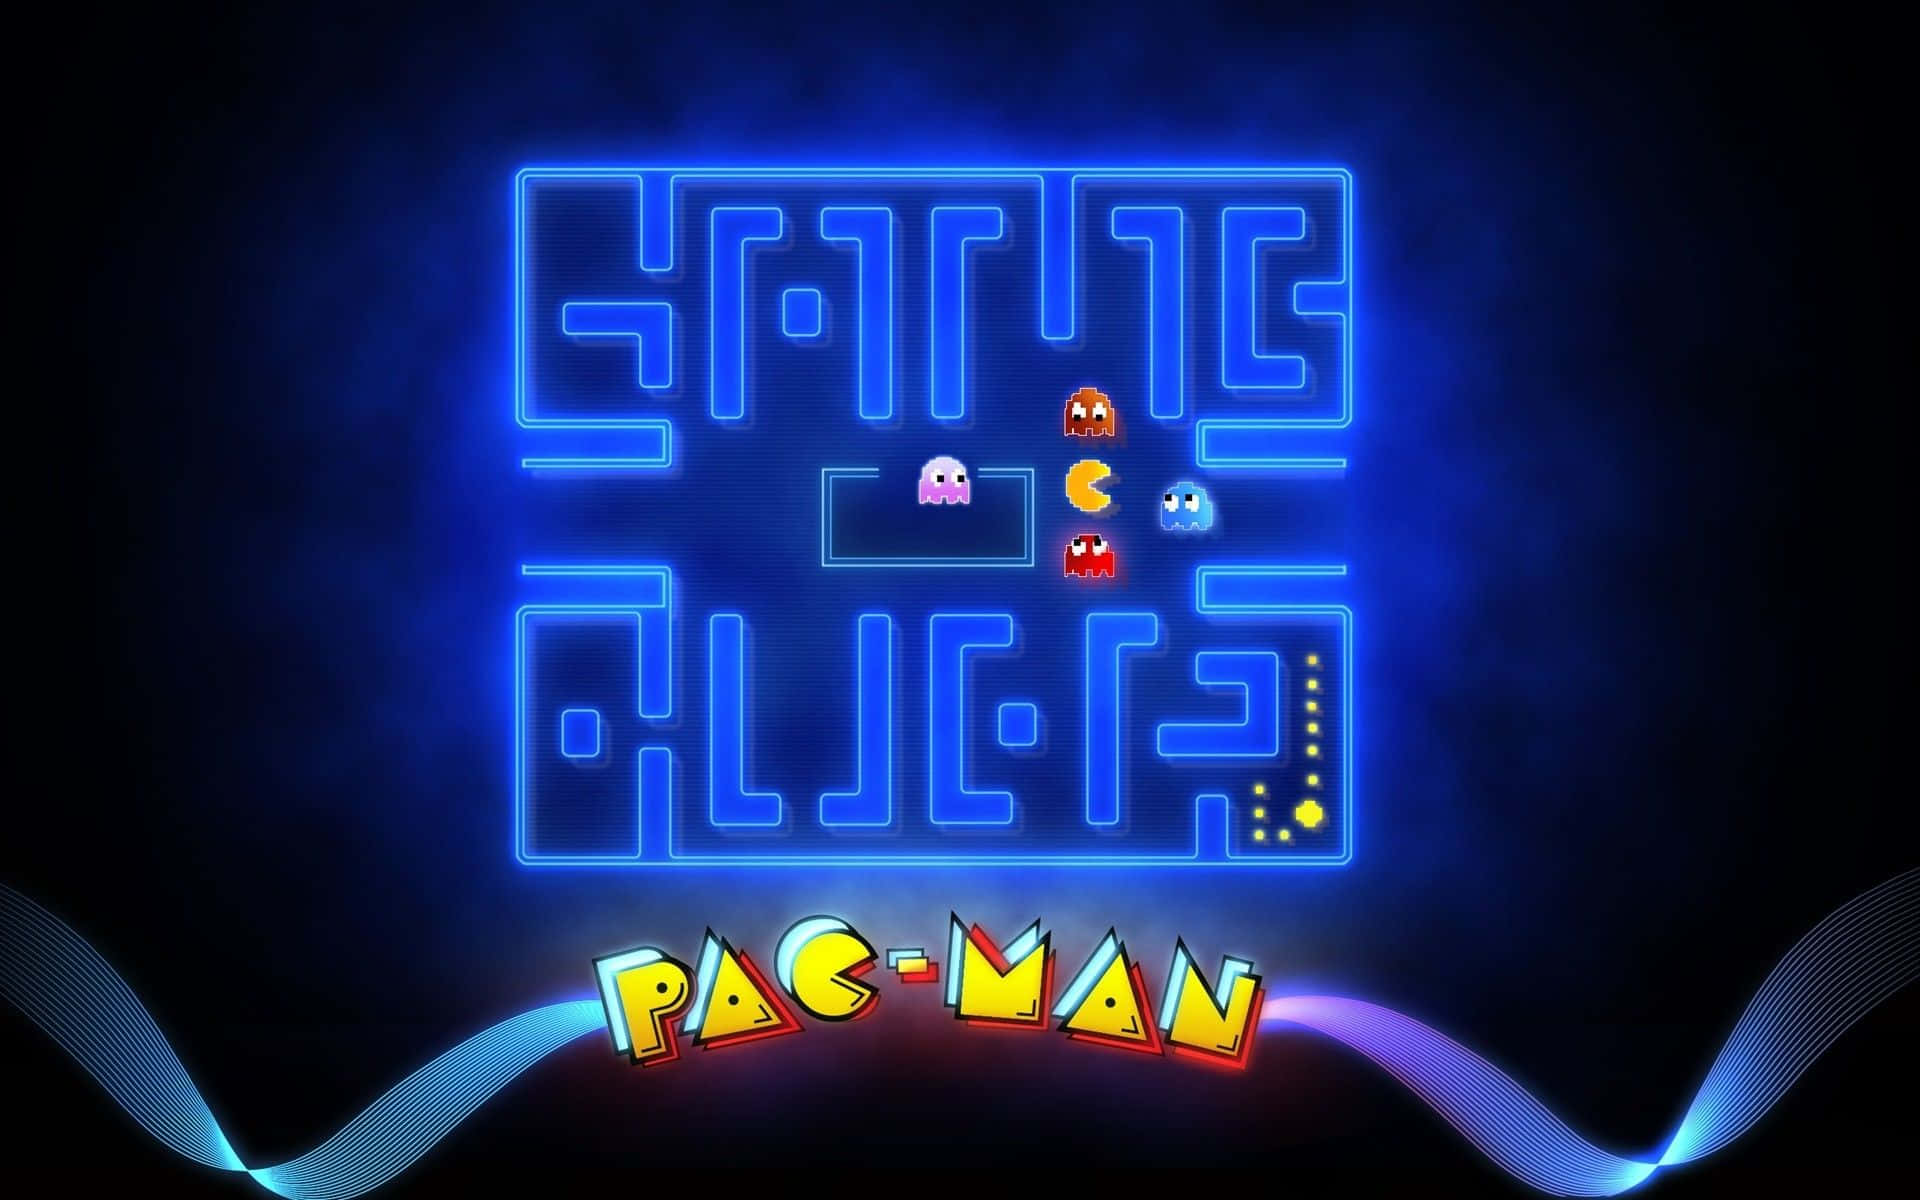 Disfrutadel Clásico Juego De Pacman Con Este Fondo Futurista De Pacman En Neón.